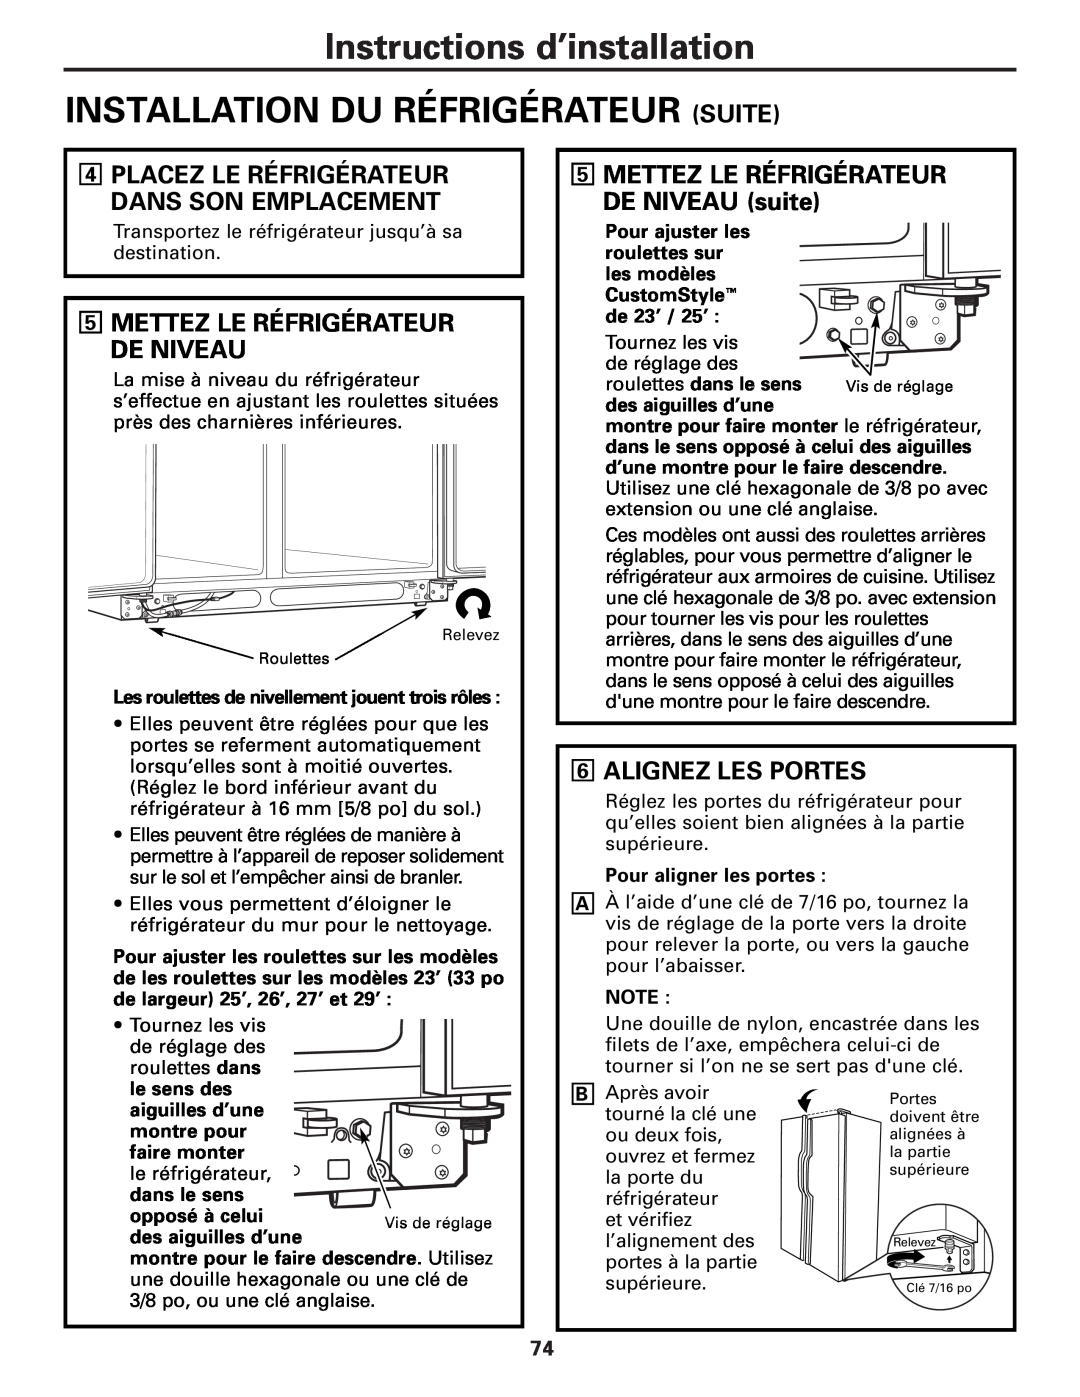 GE 49-60456 manual Installation Du Réfrigérateur Suite, Alignez Les Portes, Placez Le Réfrigérateur Dans Son Emplacement 